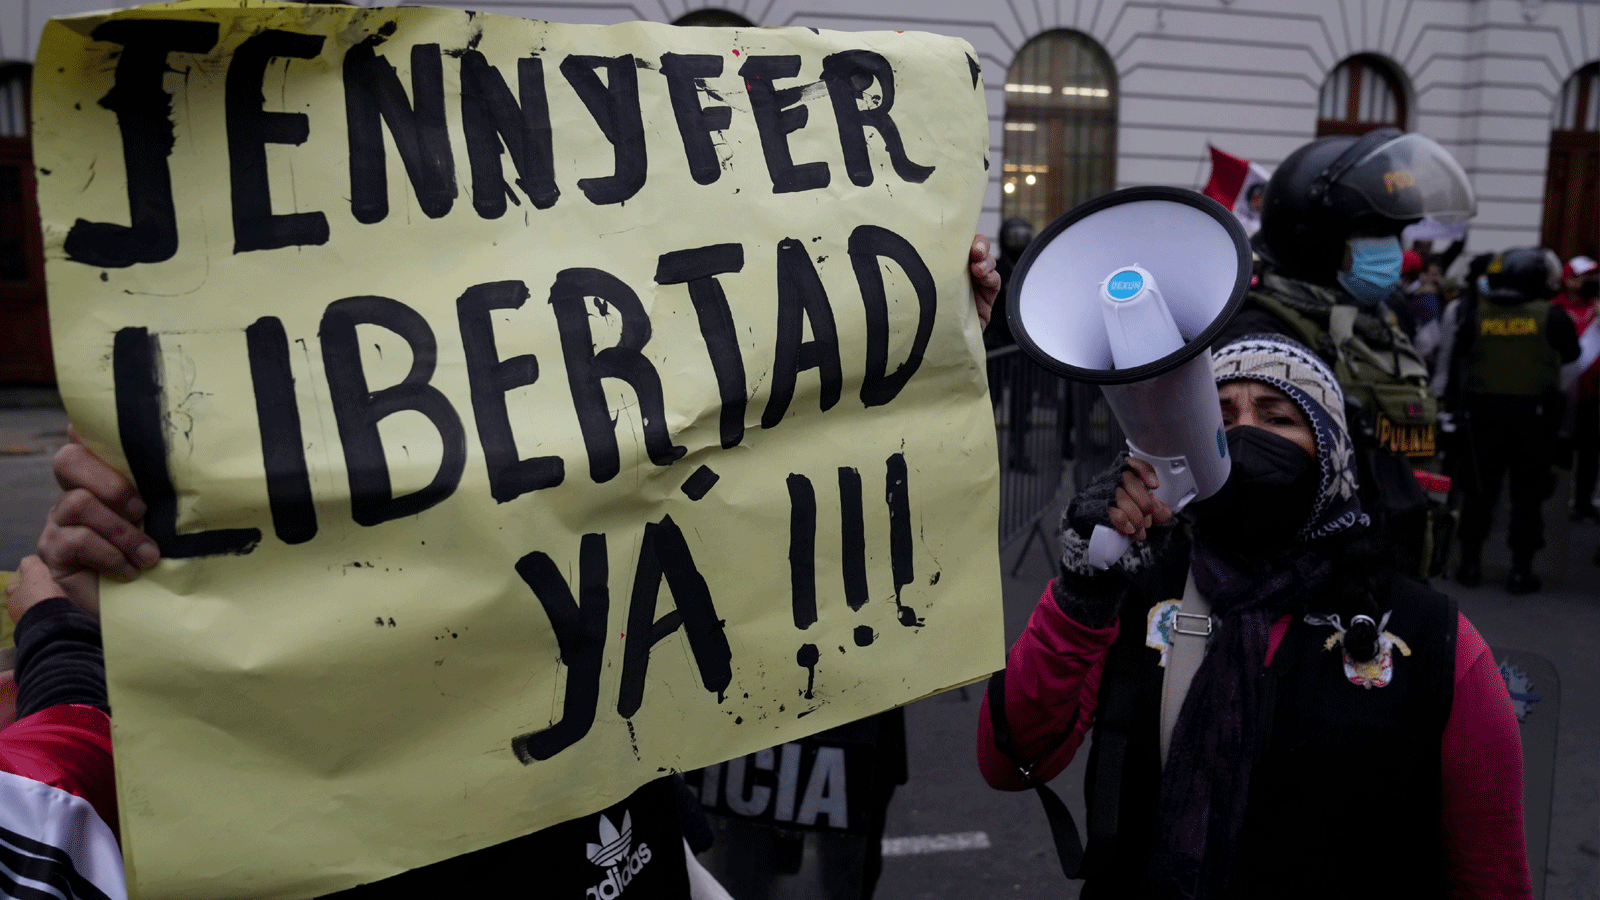 احتجاجات بعد الحكم على أخت زوجة رئيس البيرو بيدرو كاستيلو، ينيفر باريديس، بالسجن لمدة 30 شهرًا قبل المحاكمة. وهو التصعيد الأكثر خطورة لمجموعة التحقيقات الجنائية التي تستهدف الدائرة المقربة من الزعيم